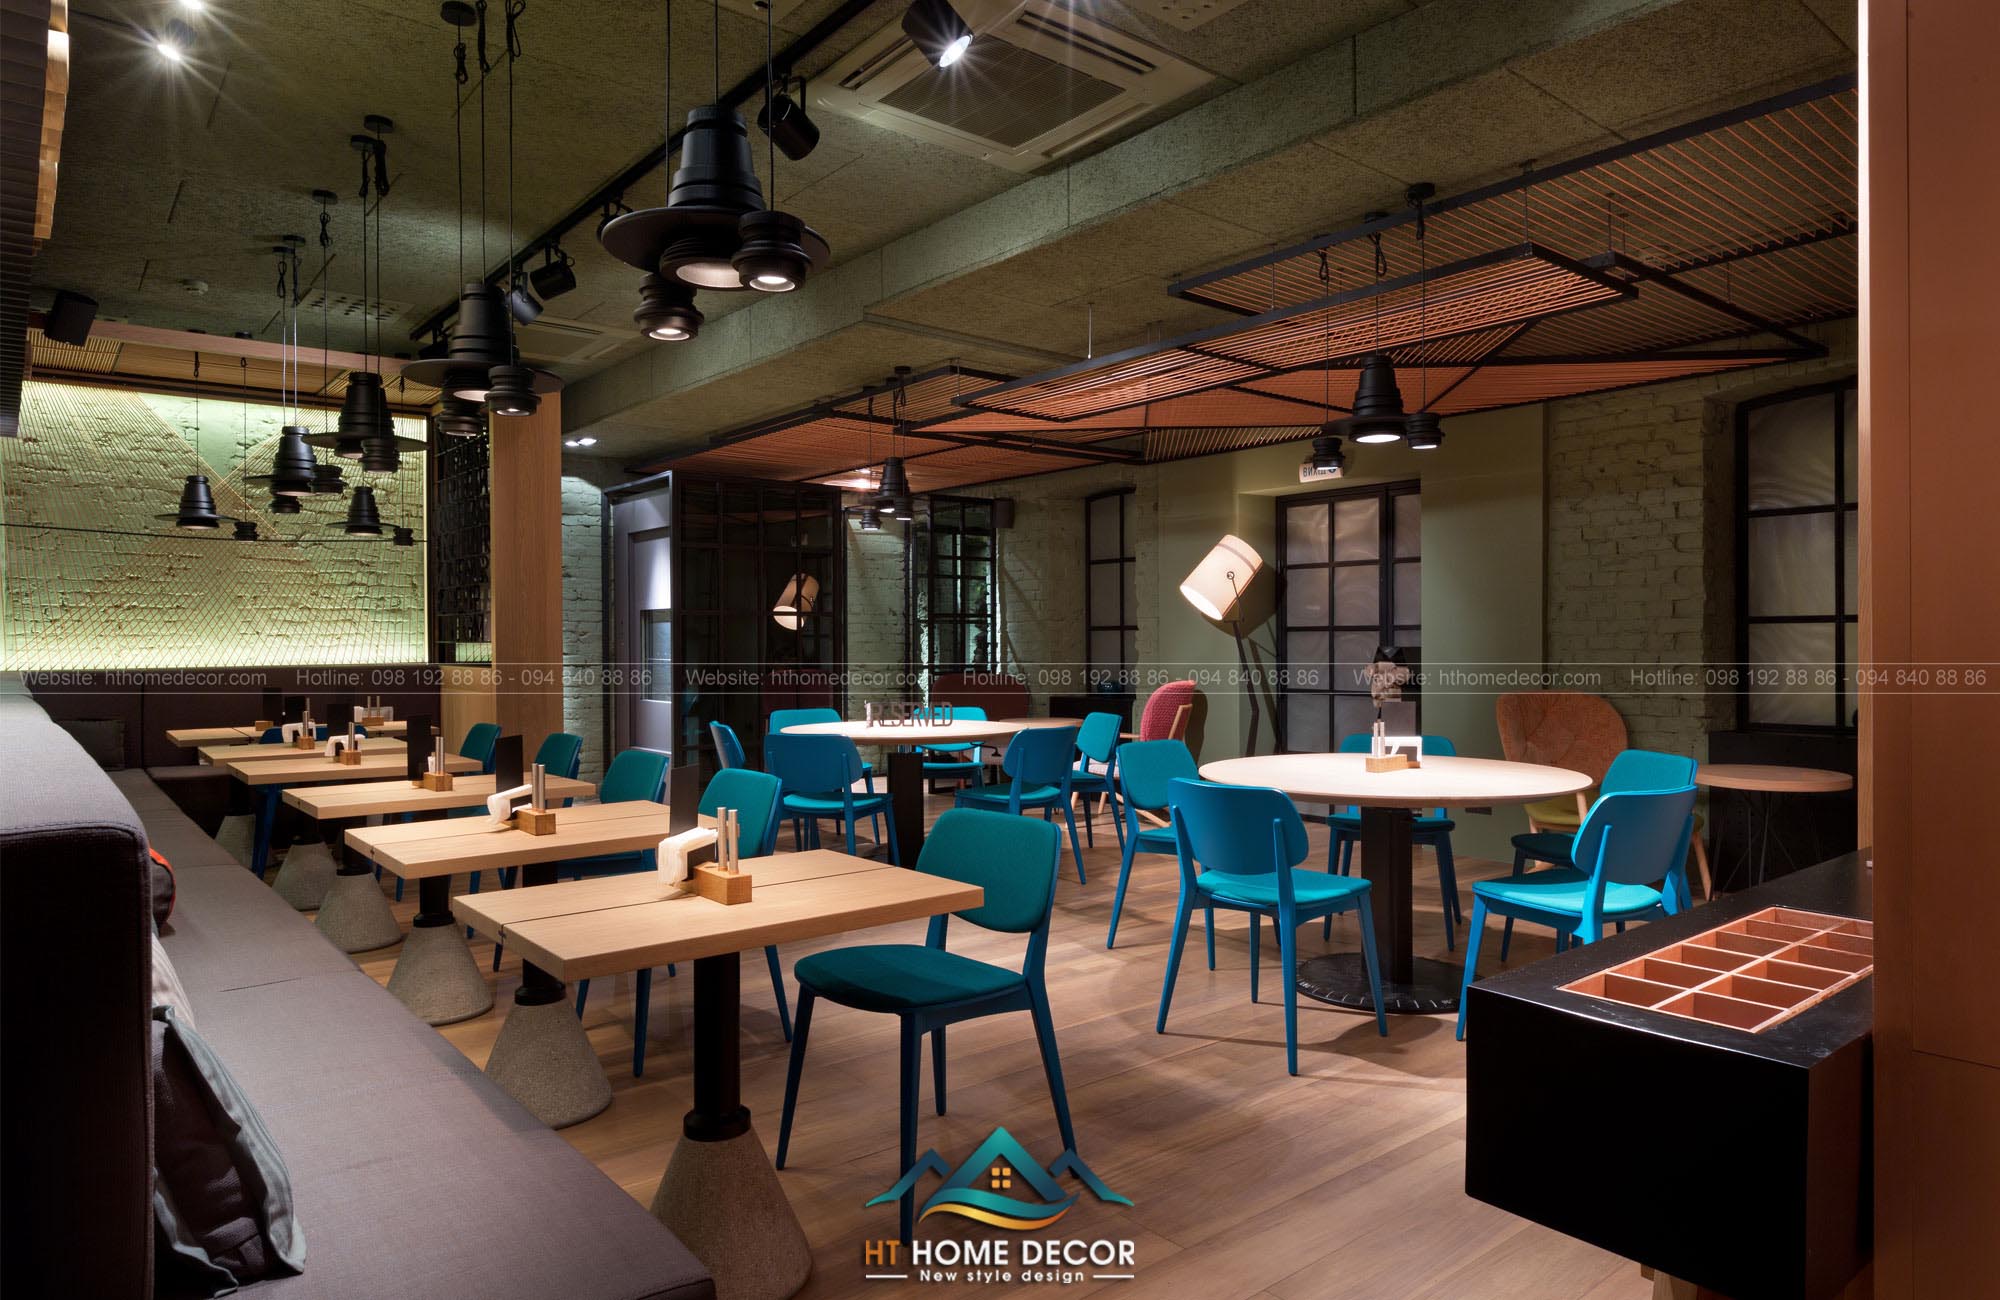 Đôi khi, sự kết hợp một vài chiếc ghế có gam màu khác sẽ tạo nên điểm nhấn cho không gian nhà hàng của bạn!